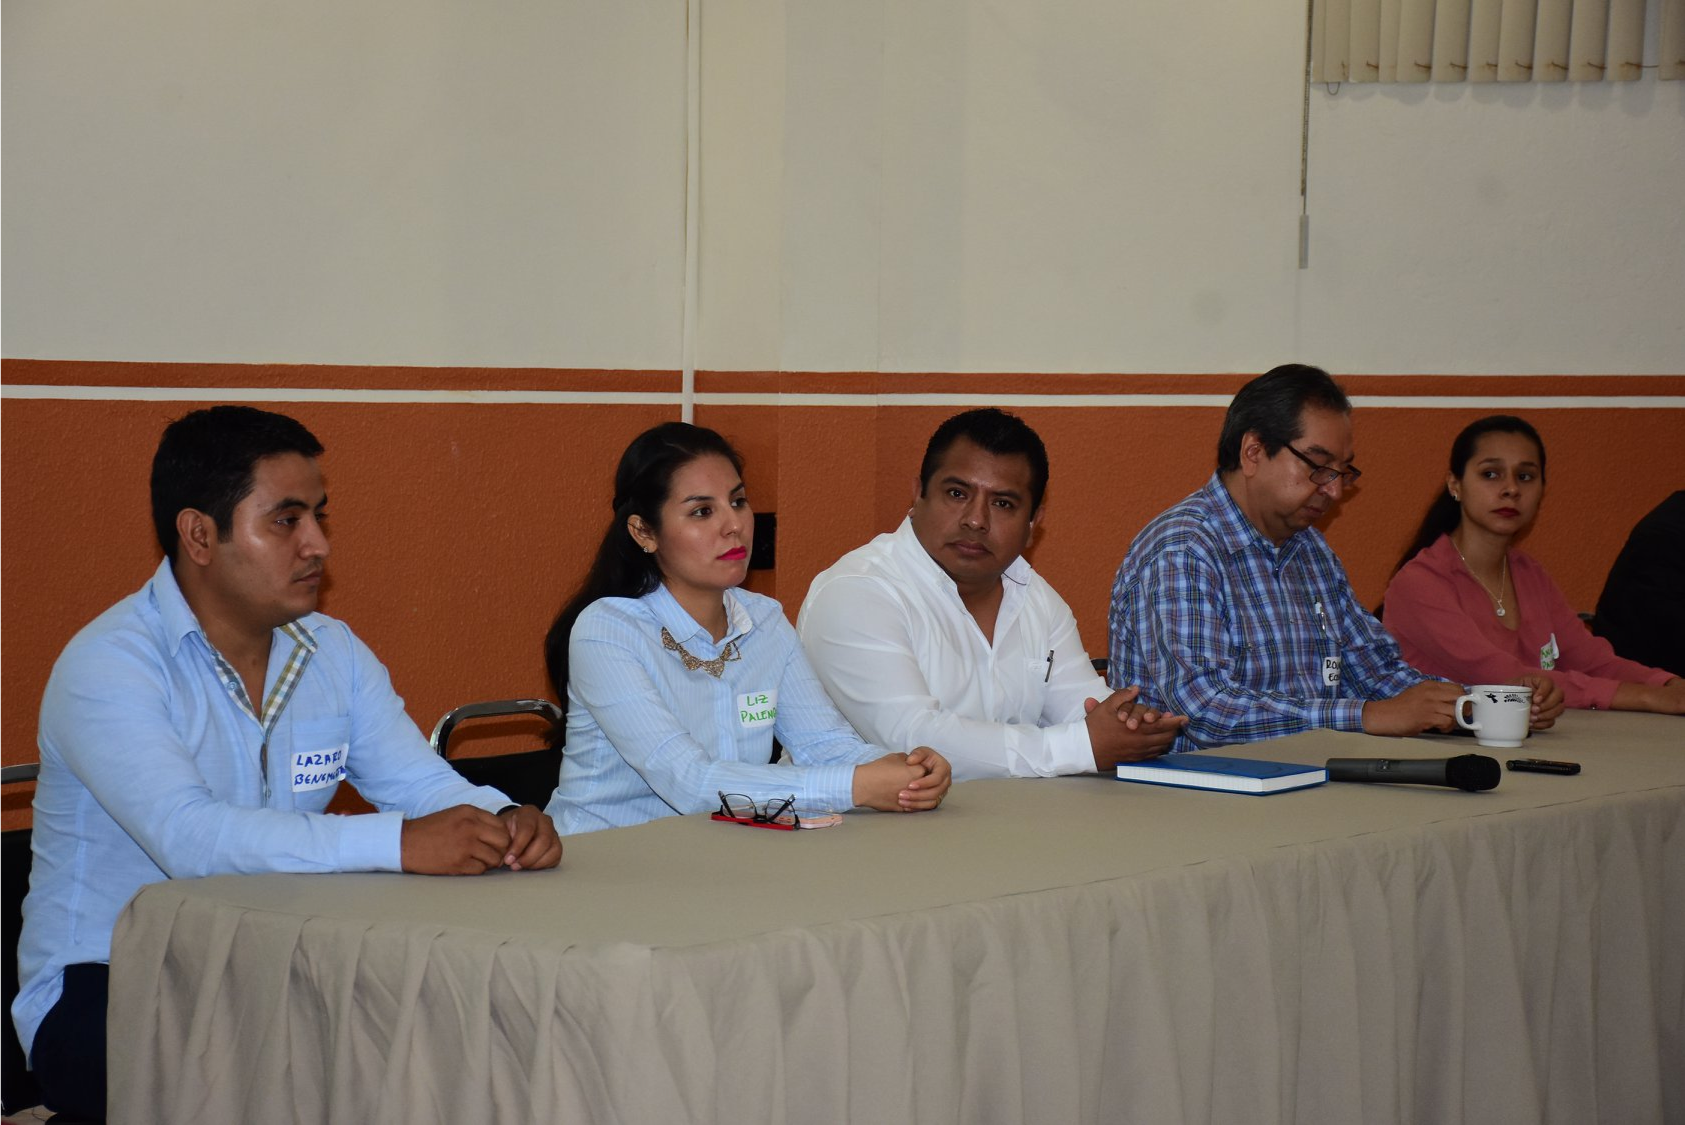 Se celebra el 2do. Encuentro Regional Multiactor sobre Derechos Humanos y Acción Municipal en Palenque, Chiapas